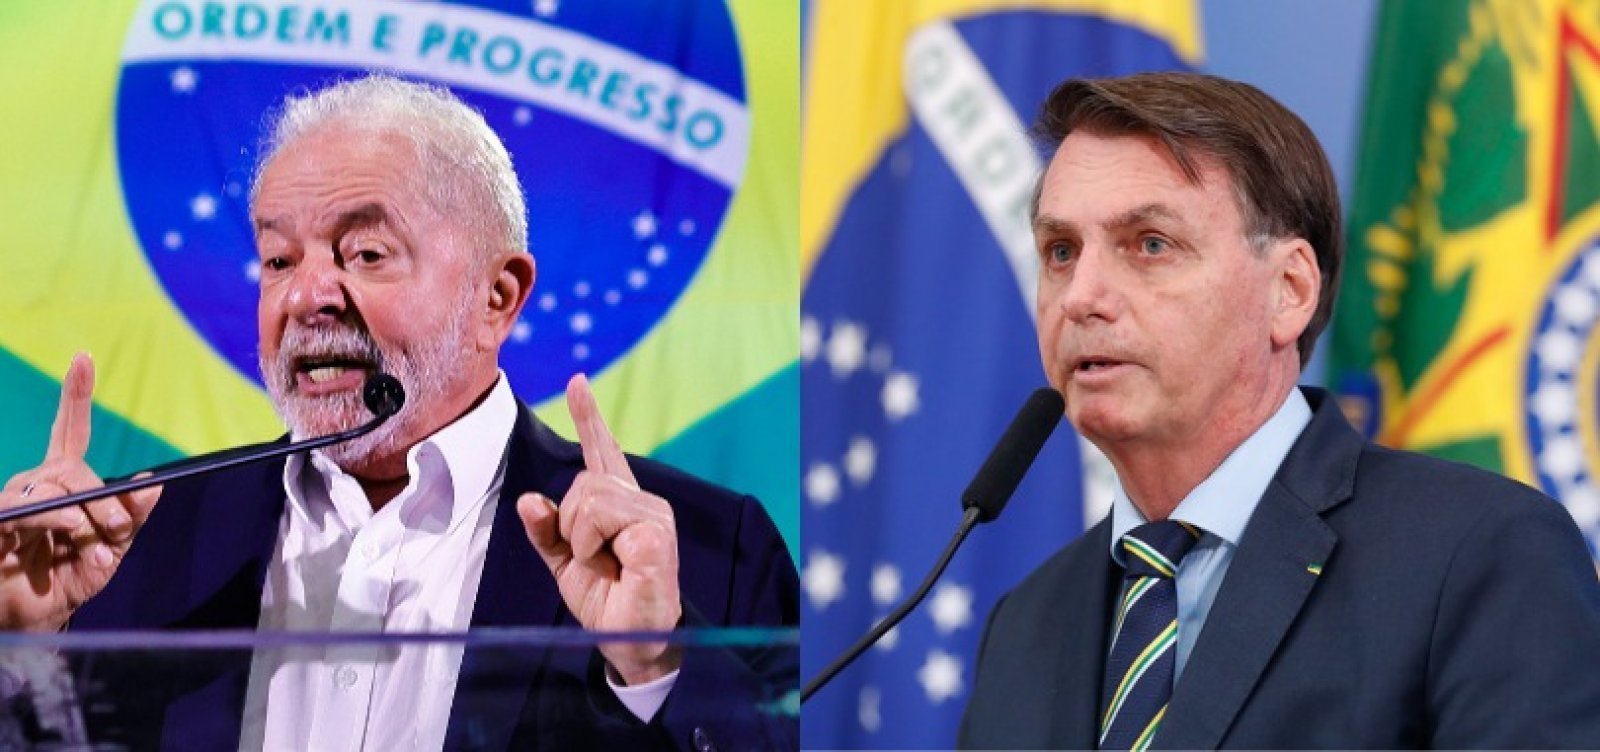 Bolsonaro avança e vantagem de Lula agora é de 15 pontos no 1º turno, diz Datafolha